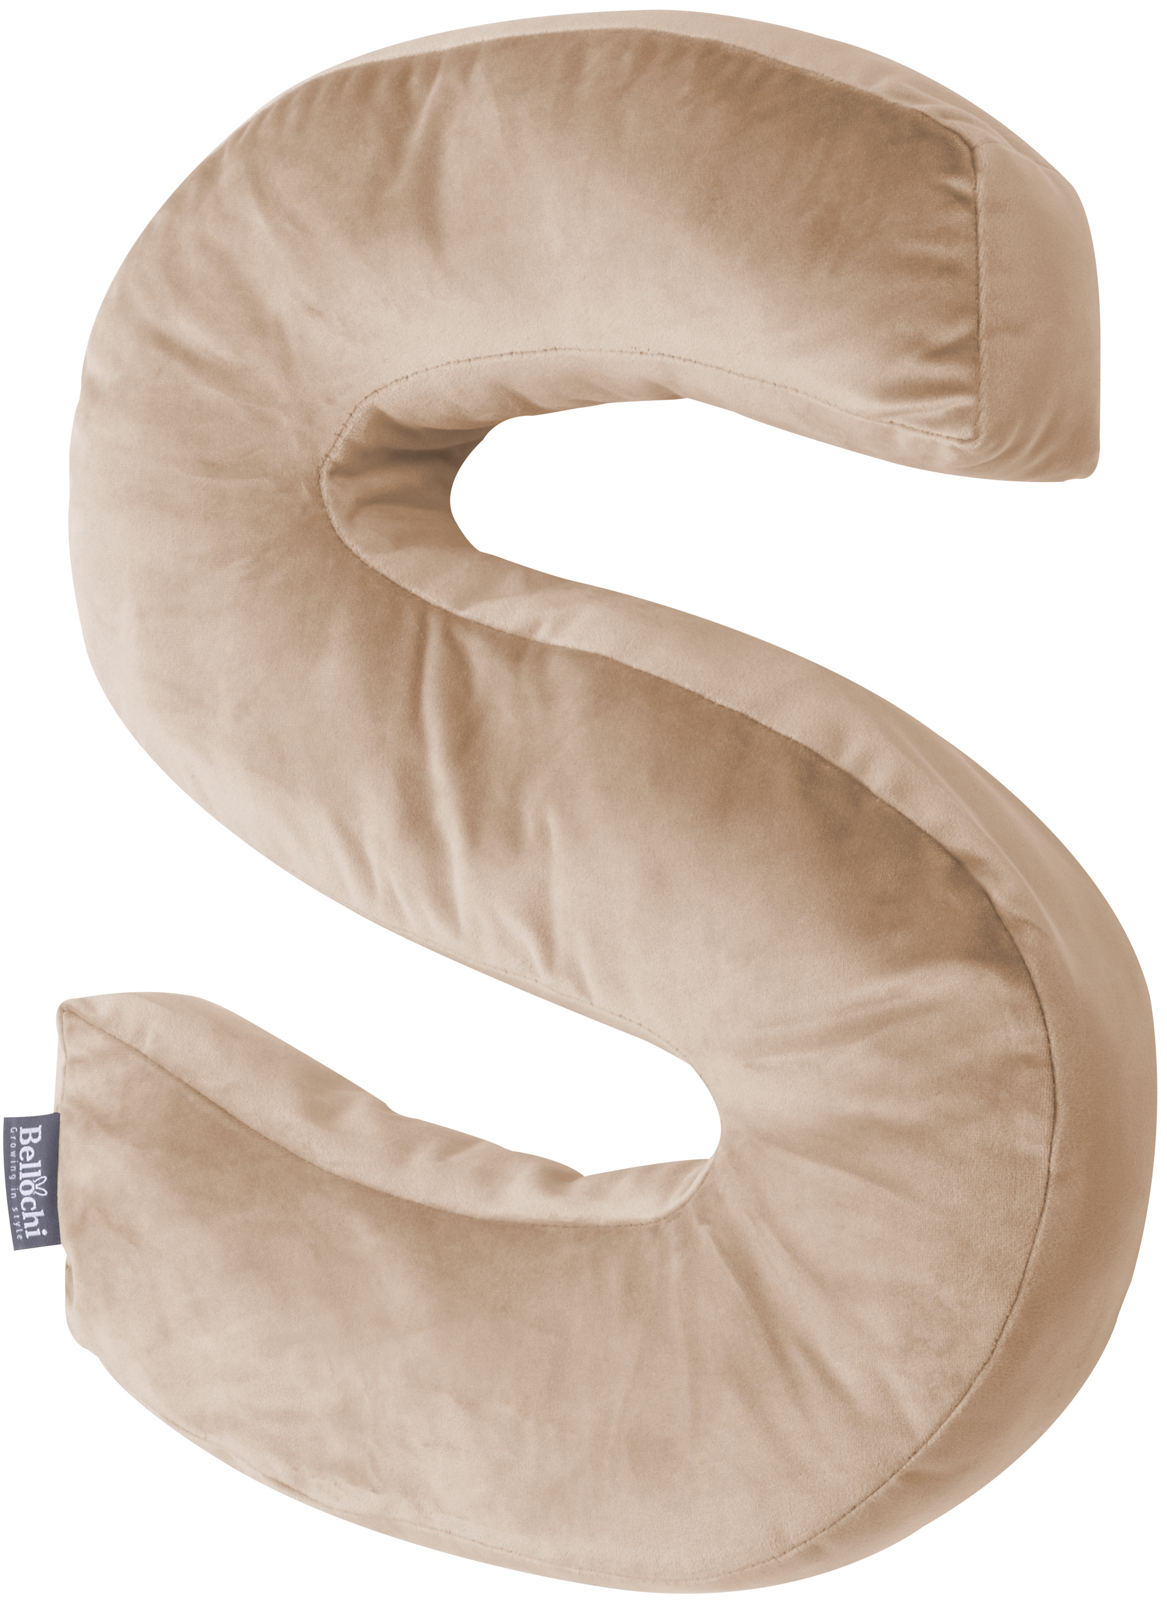 Decorative velvet letter pillow S shaped beige